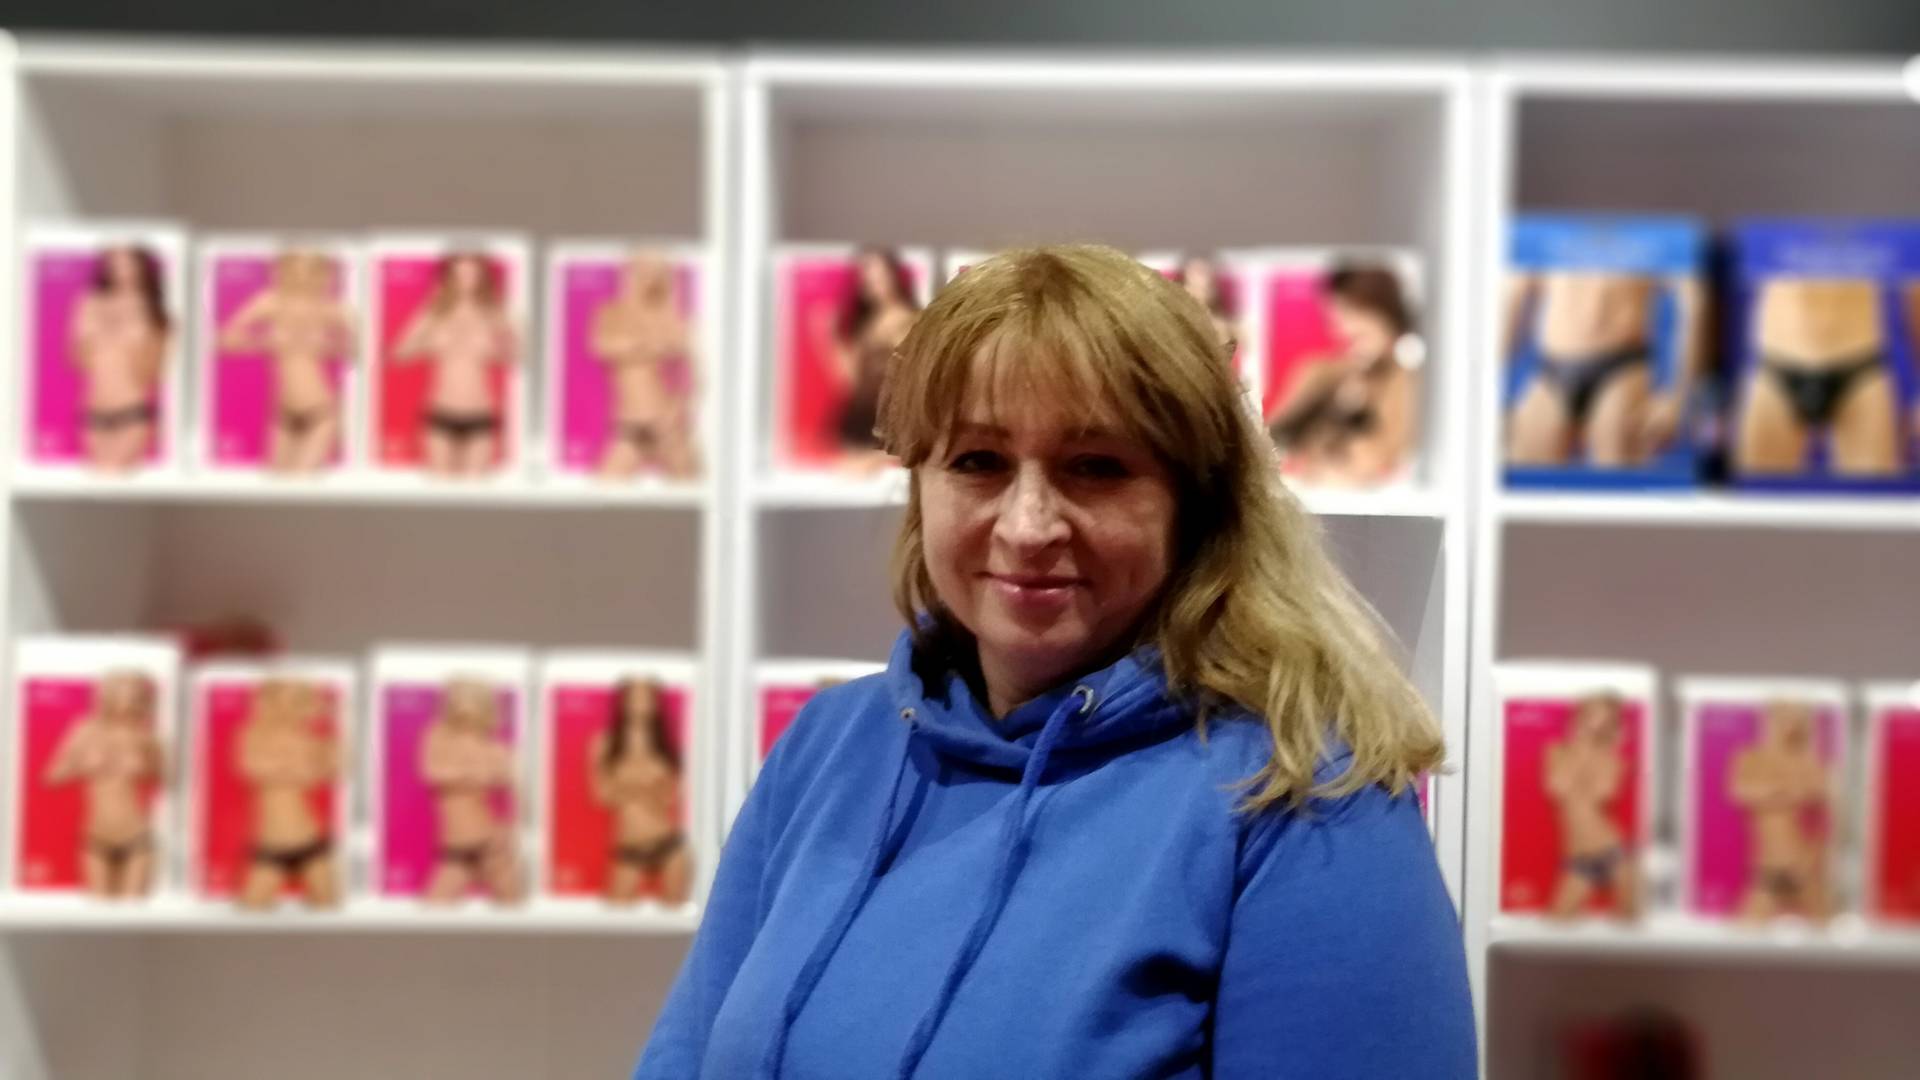 Pani Elwira prowadzi pierwszy ekologiczny sex shop w Polsce. "Wszystko dla ratowania planety"